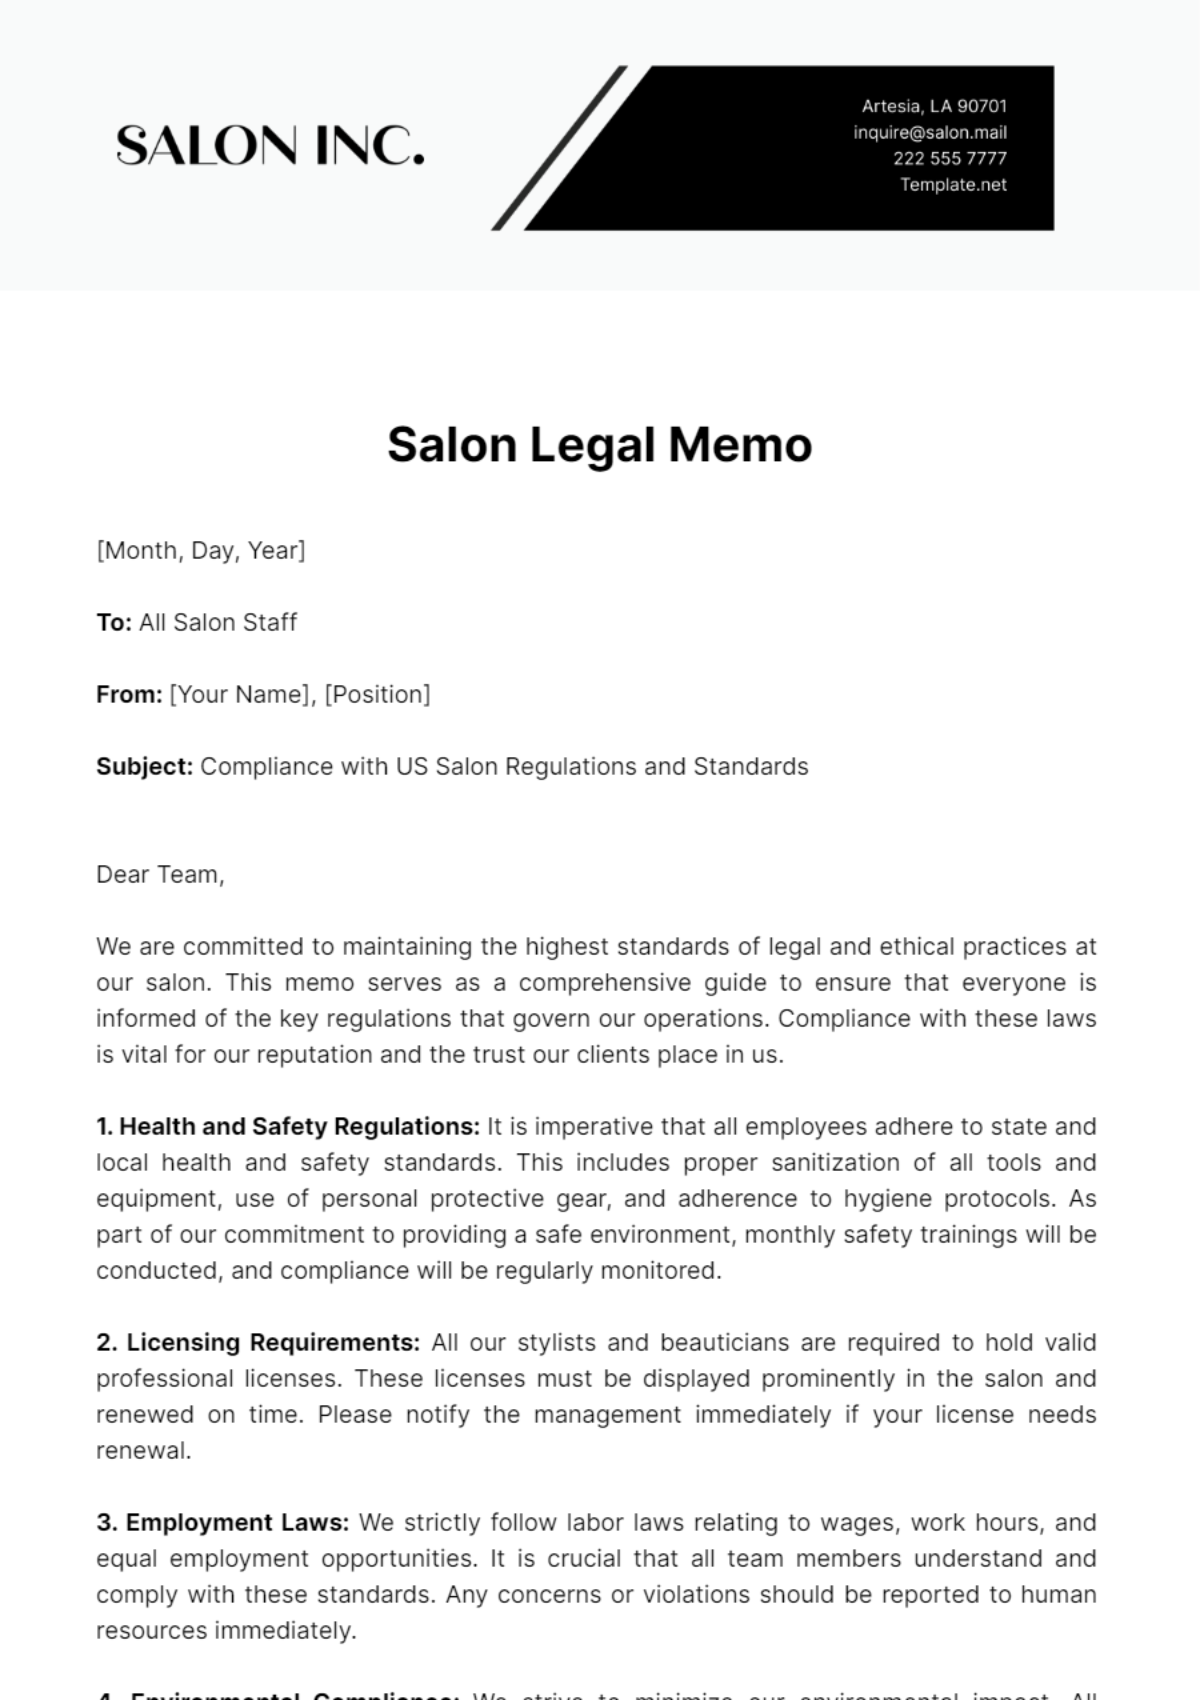 Salon Legal Memo Template